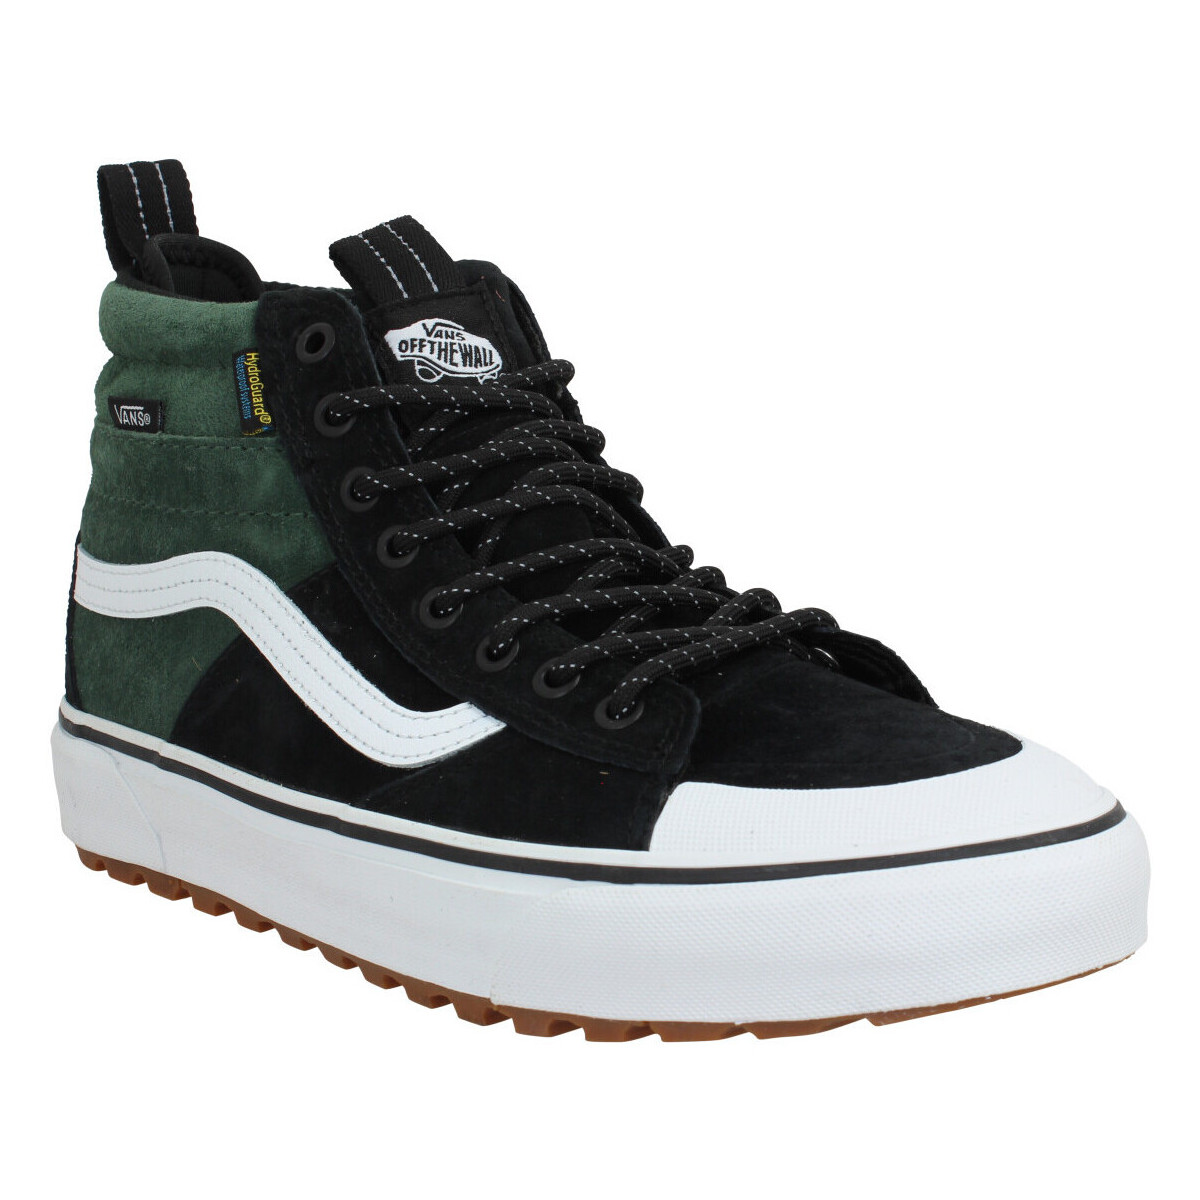 Sneakers Vans Sk8 Hi Mte 2 Velours Homme Black Green